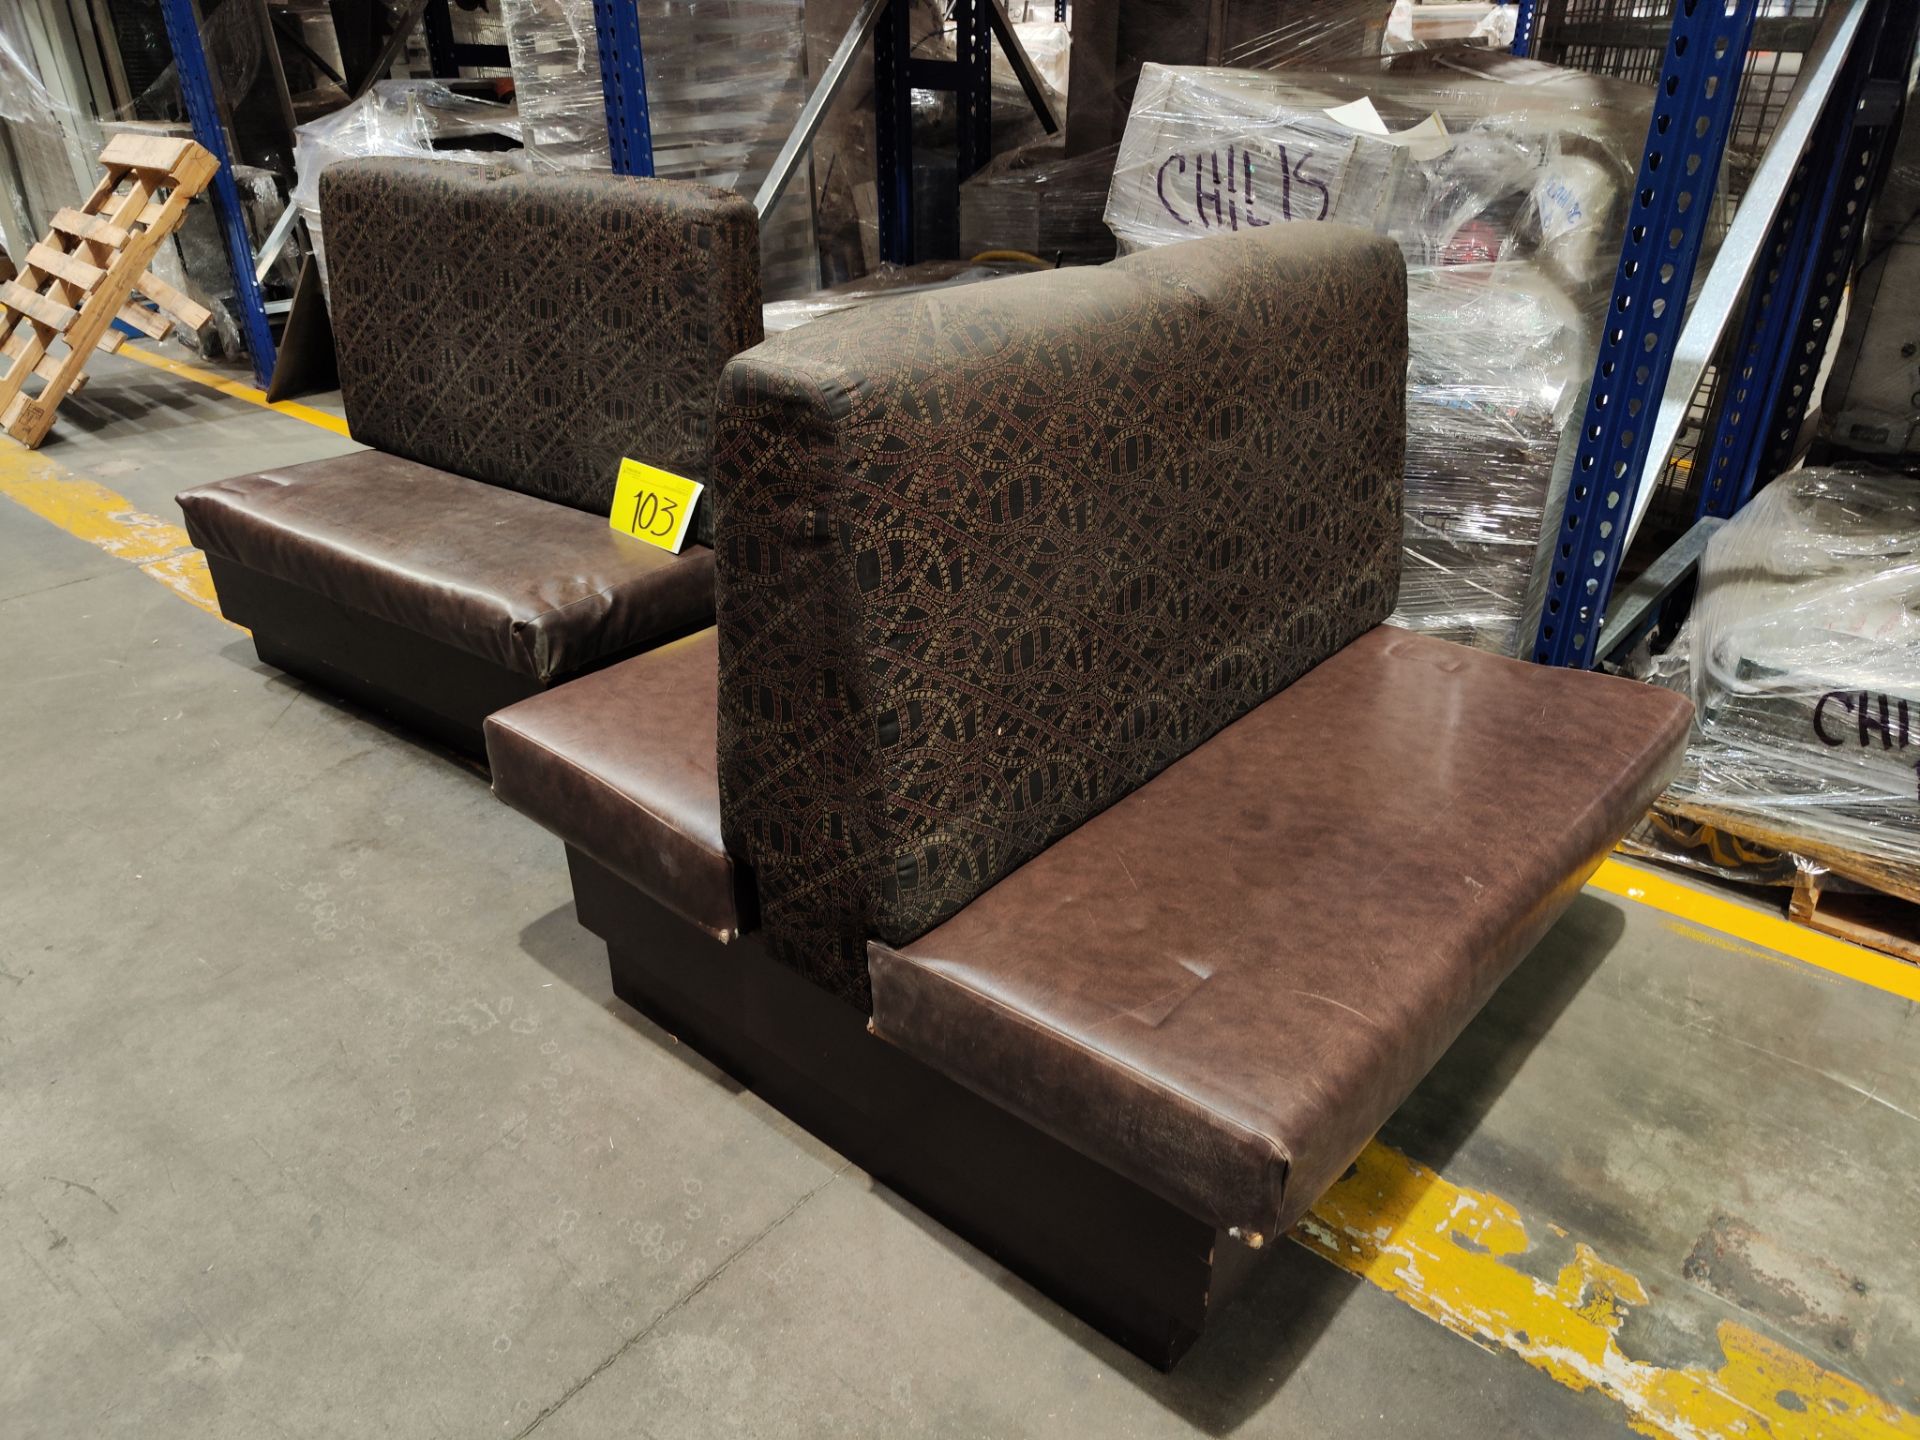 Lote de 2 piezas contiene: 1 sillón doble tipo boot en madera con asientos en tela tipo vinipiel co - Image 2 of 6